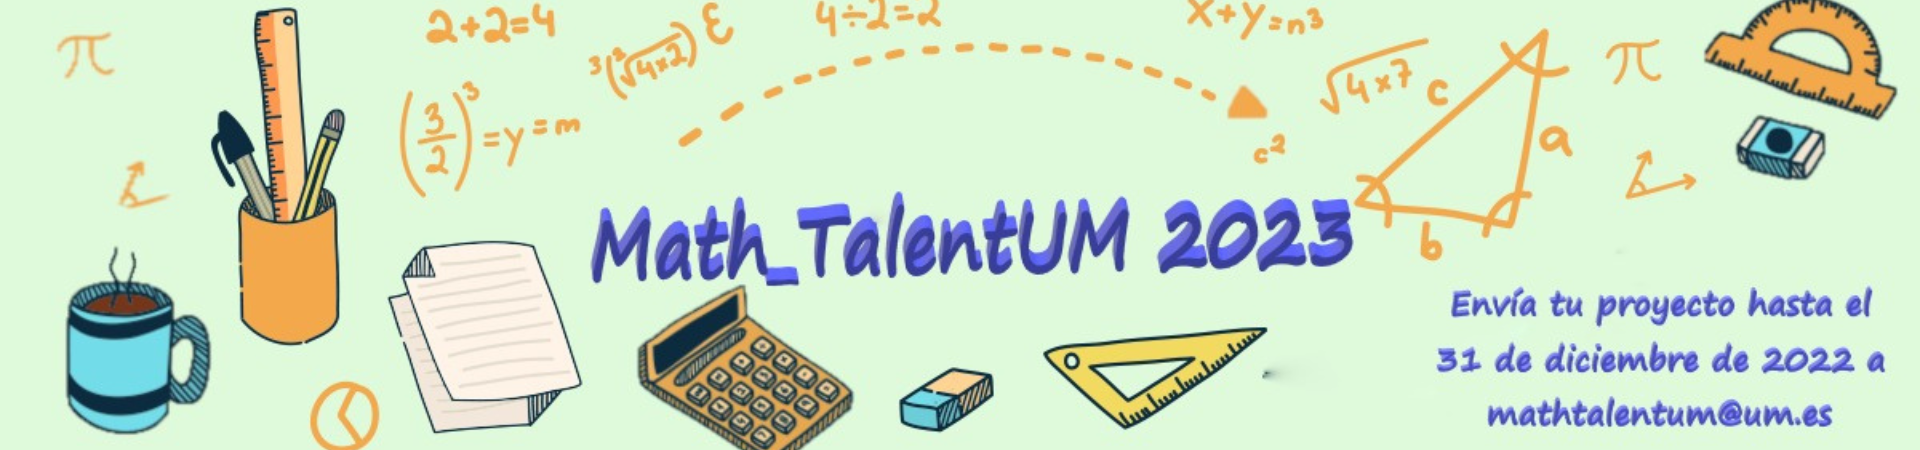 Comienza la IV edición del certamen Math_TalentUM